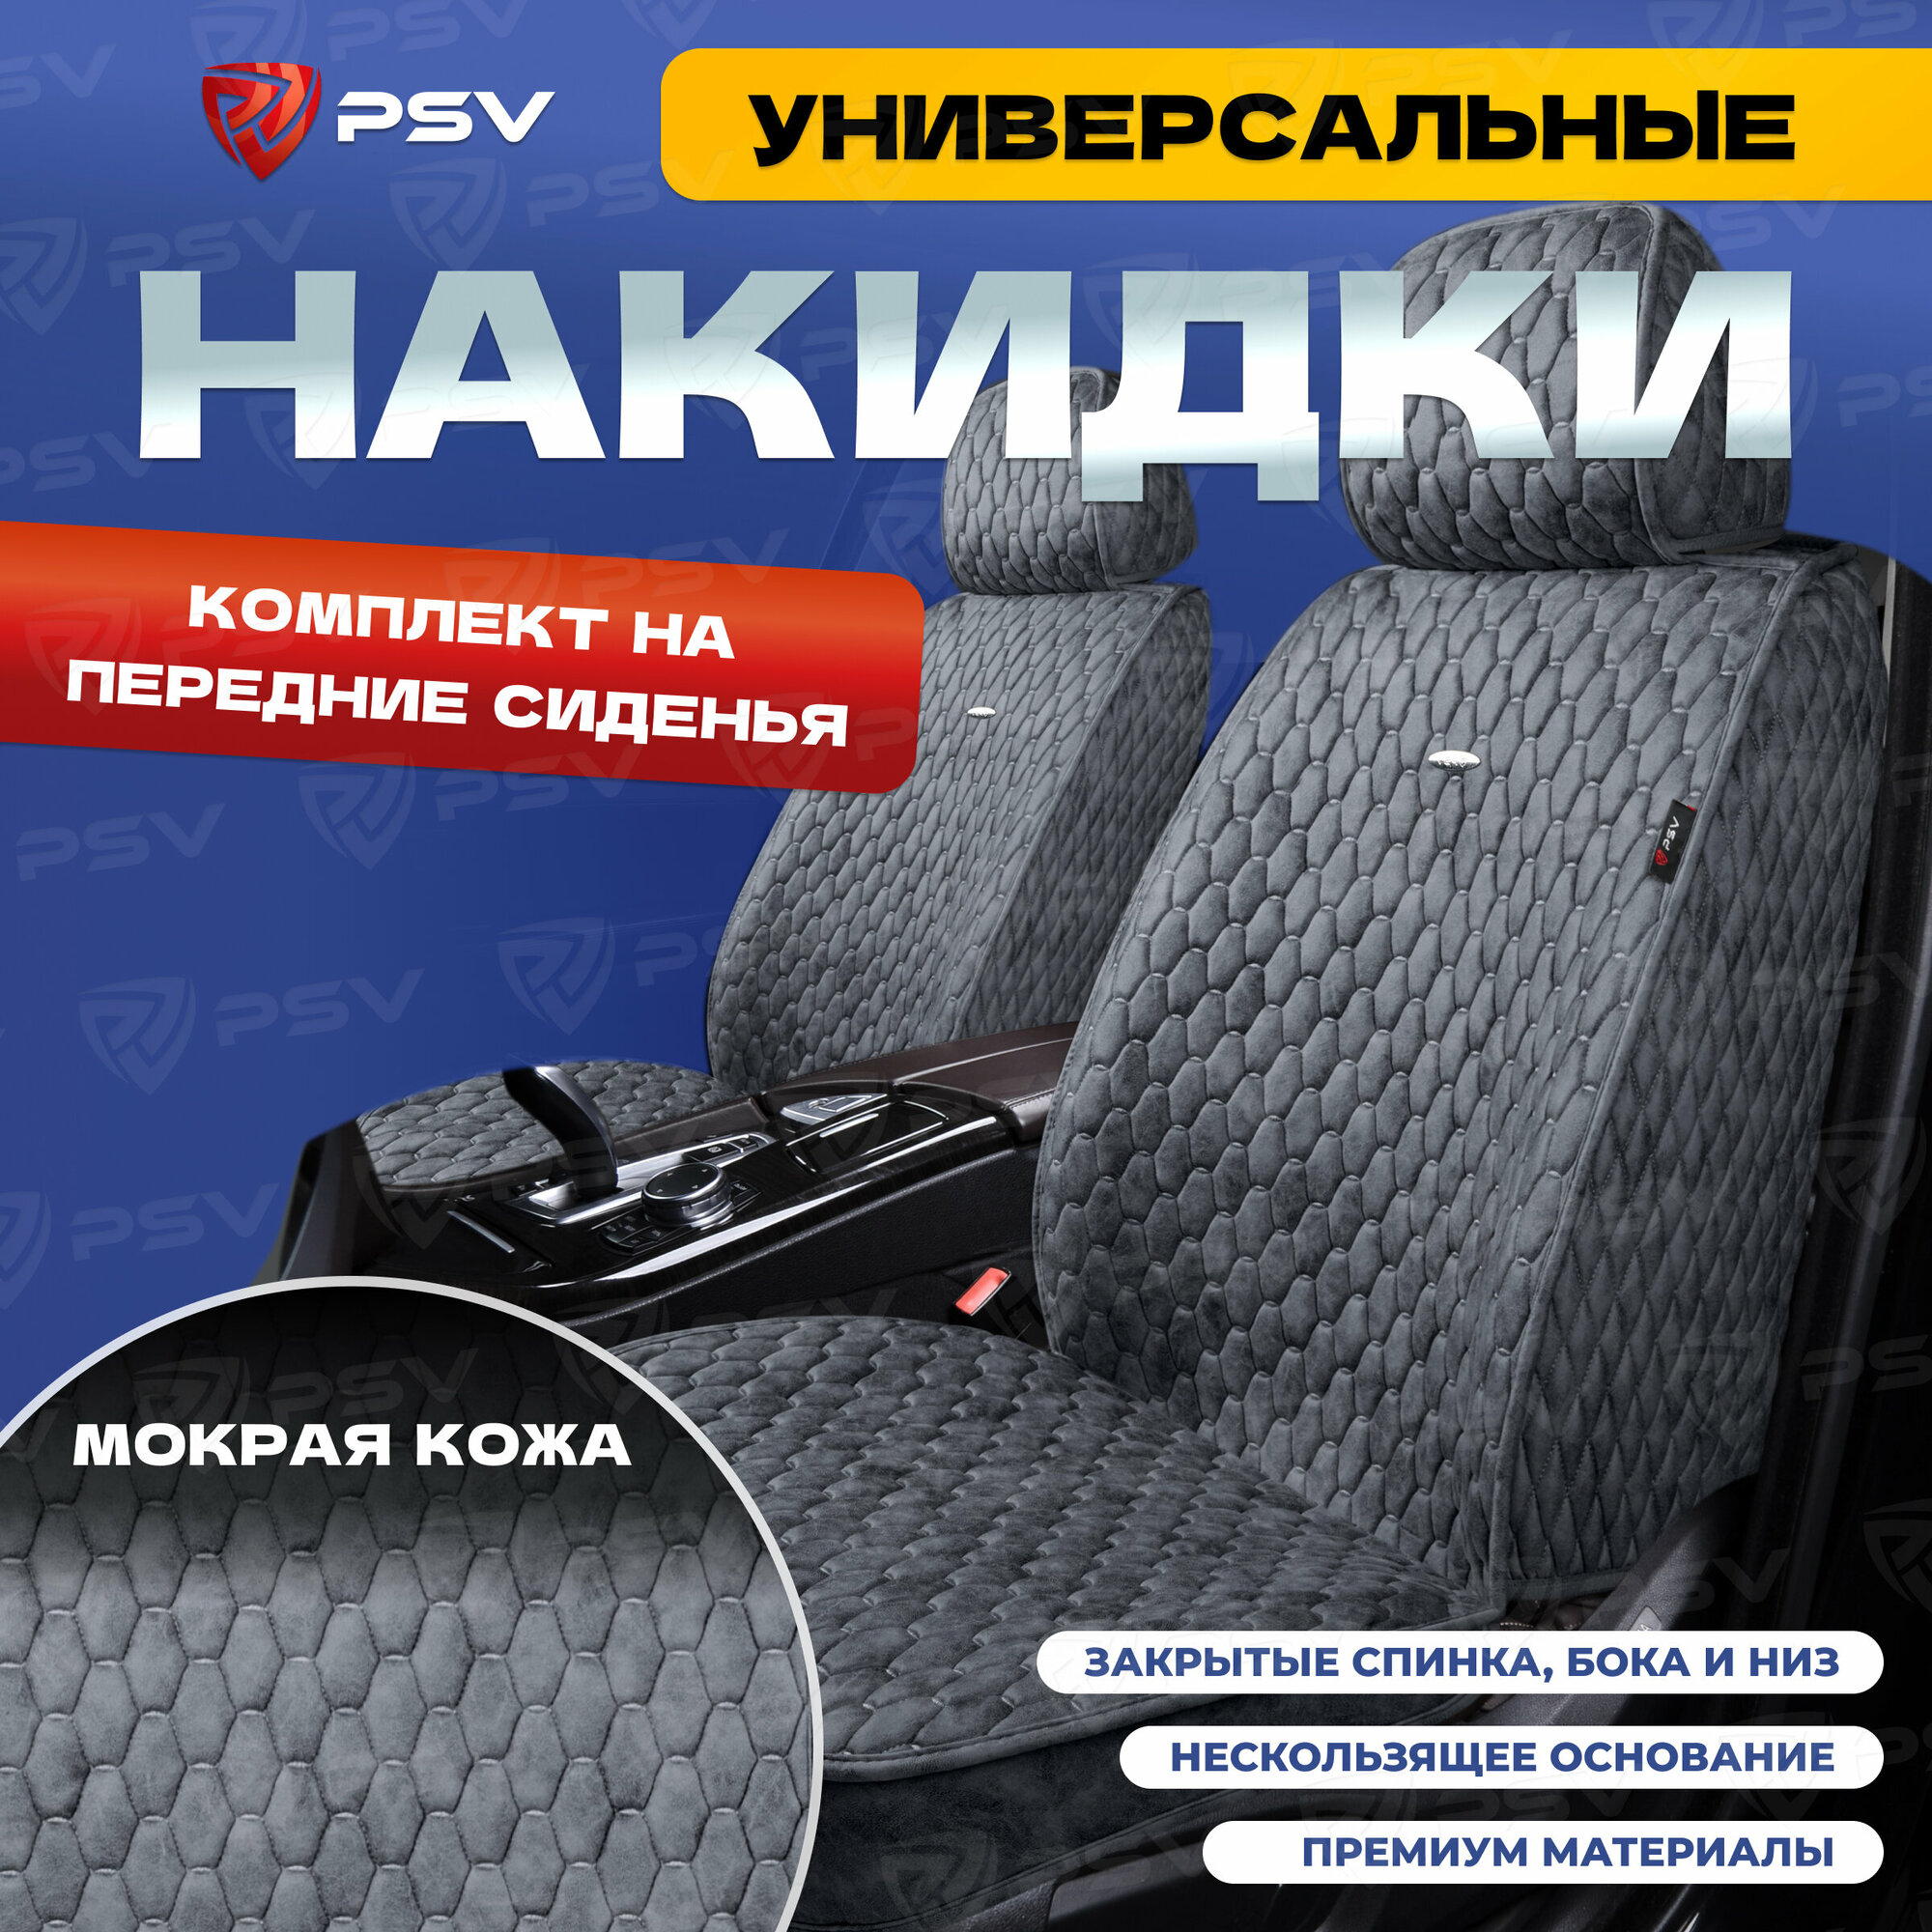 Накидки-чехлы универсальные в машину PSV 5D Skin 2 FRONT (Серый, Отстрочка серая), на передние сиденья, мокрая кожа